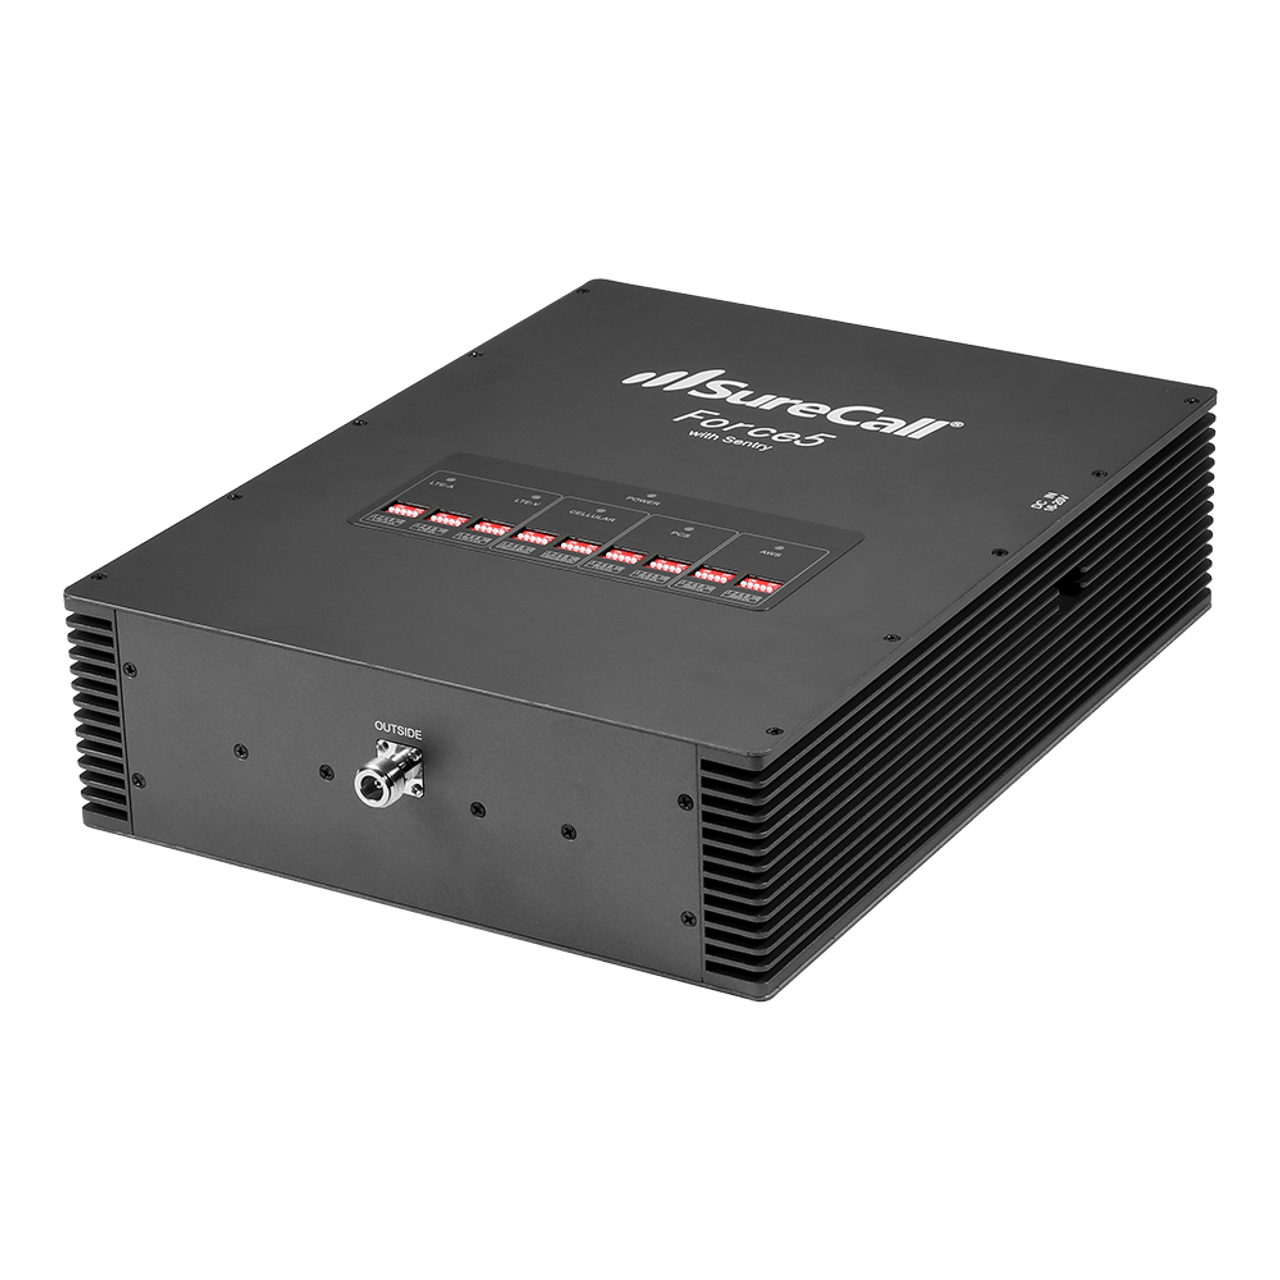 Amplificateur de signal cellulaire 4G LTE/5G pour VR SureCall